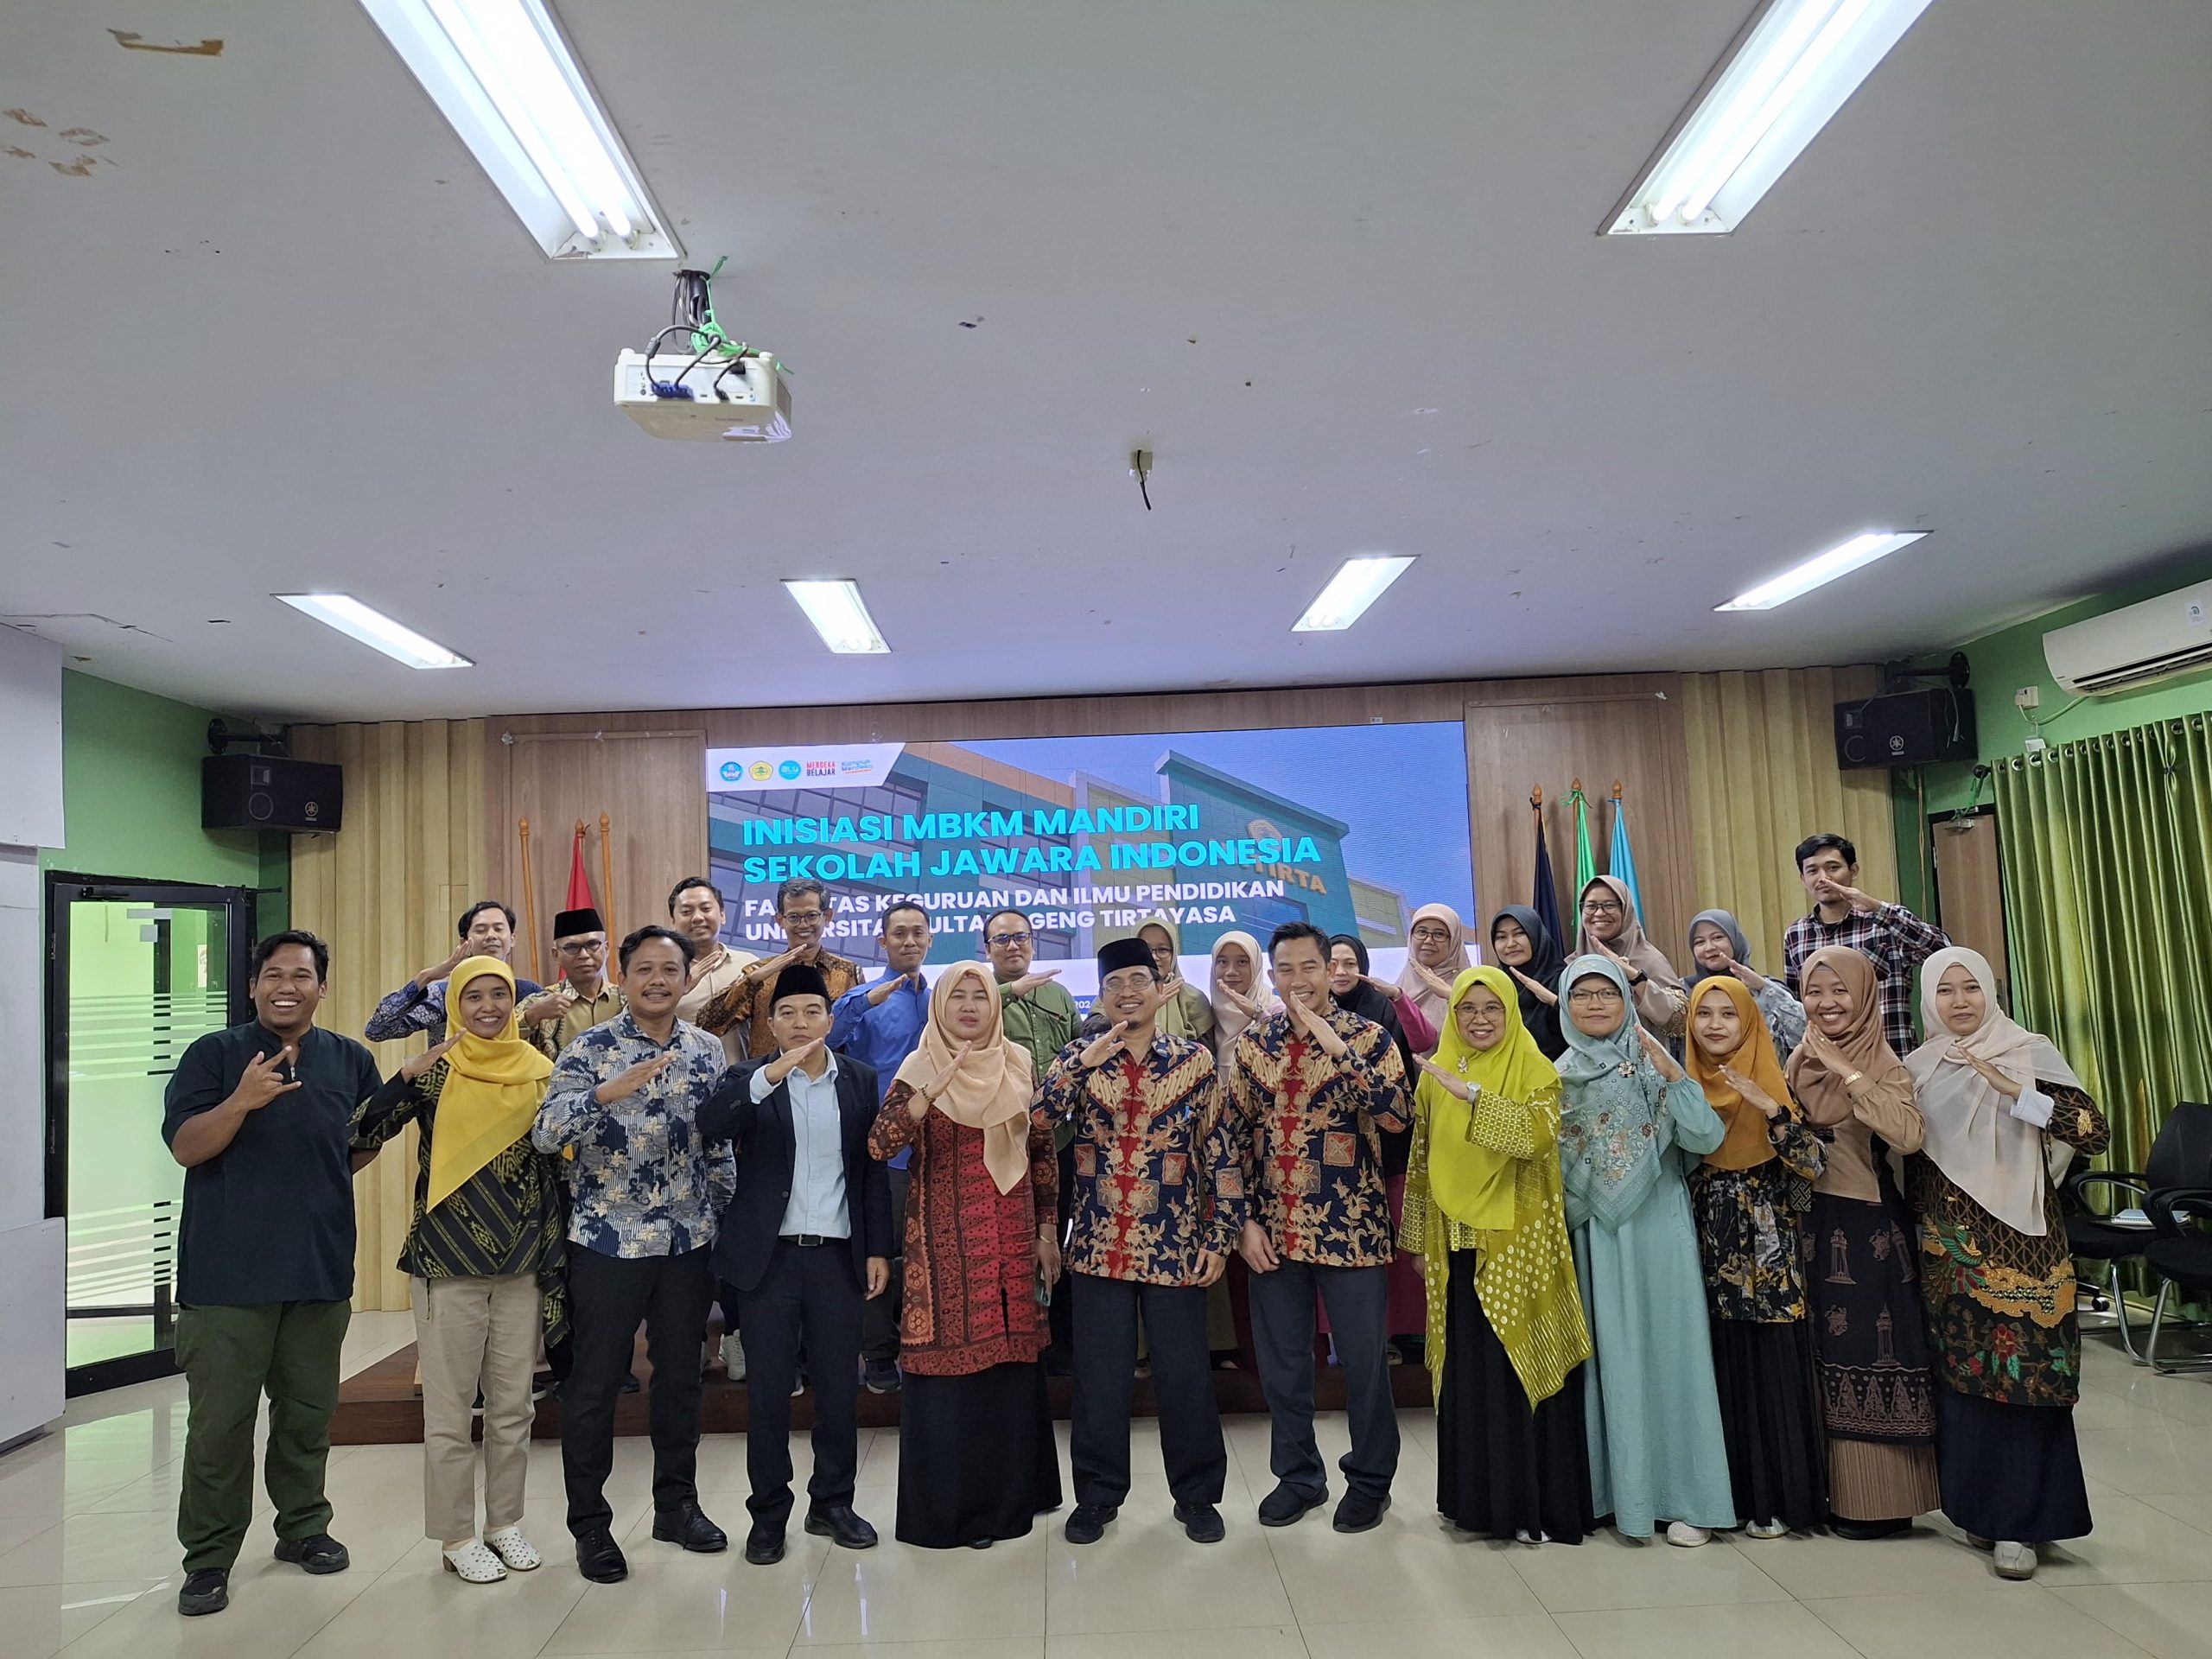 Workshop FKIP Untirta : Inisiasi MBKM Mandiri Sekolah Jawara Indonesia